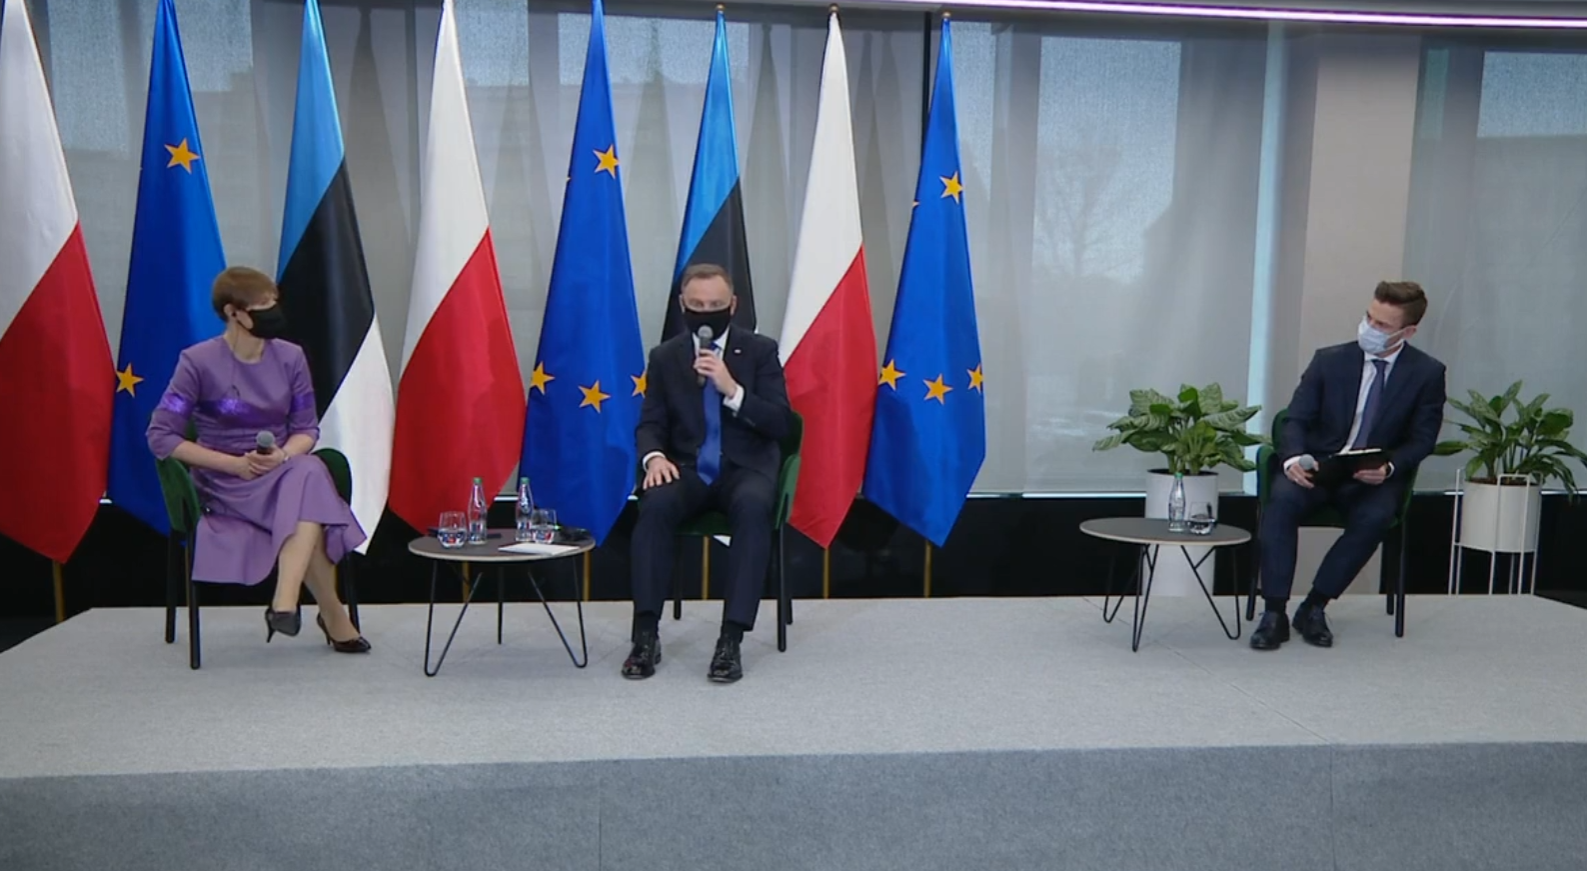 Prezydent Estonii Kersti Keljulaid oraz prezydent Polski Andrzej Duda podczas panelu Pol-Est Green Bridge. Fot. Wojciech Jakóbik